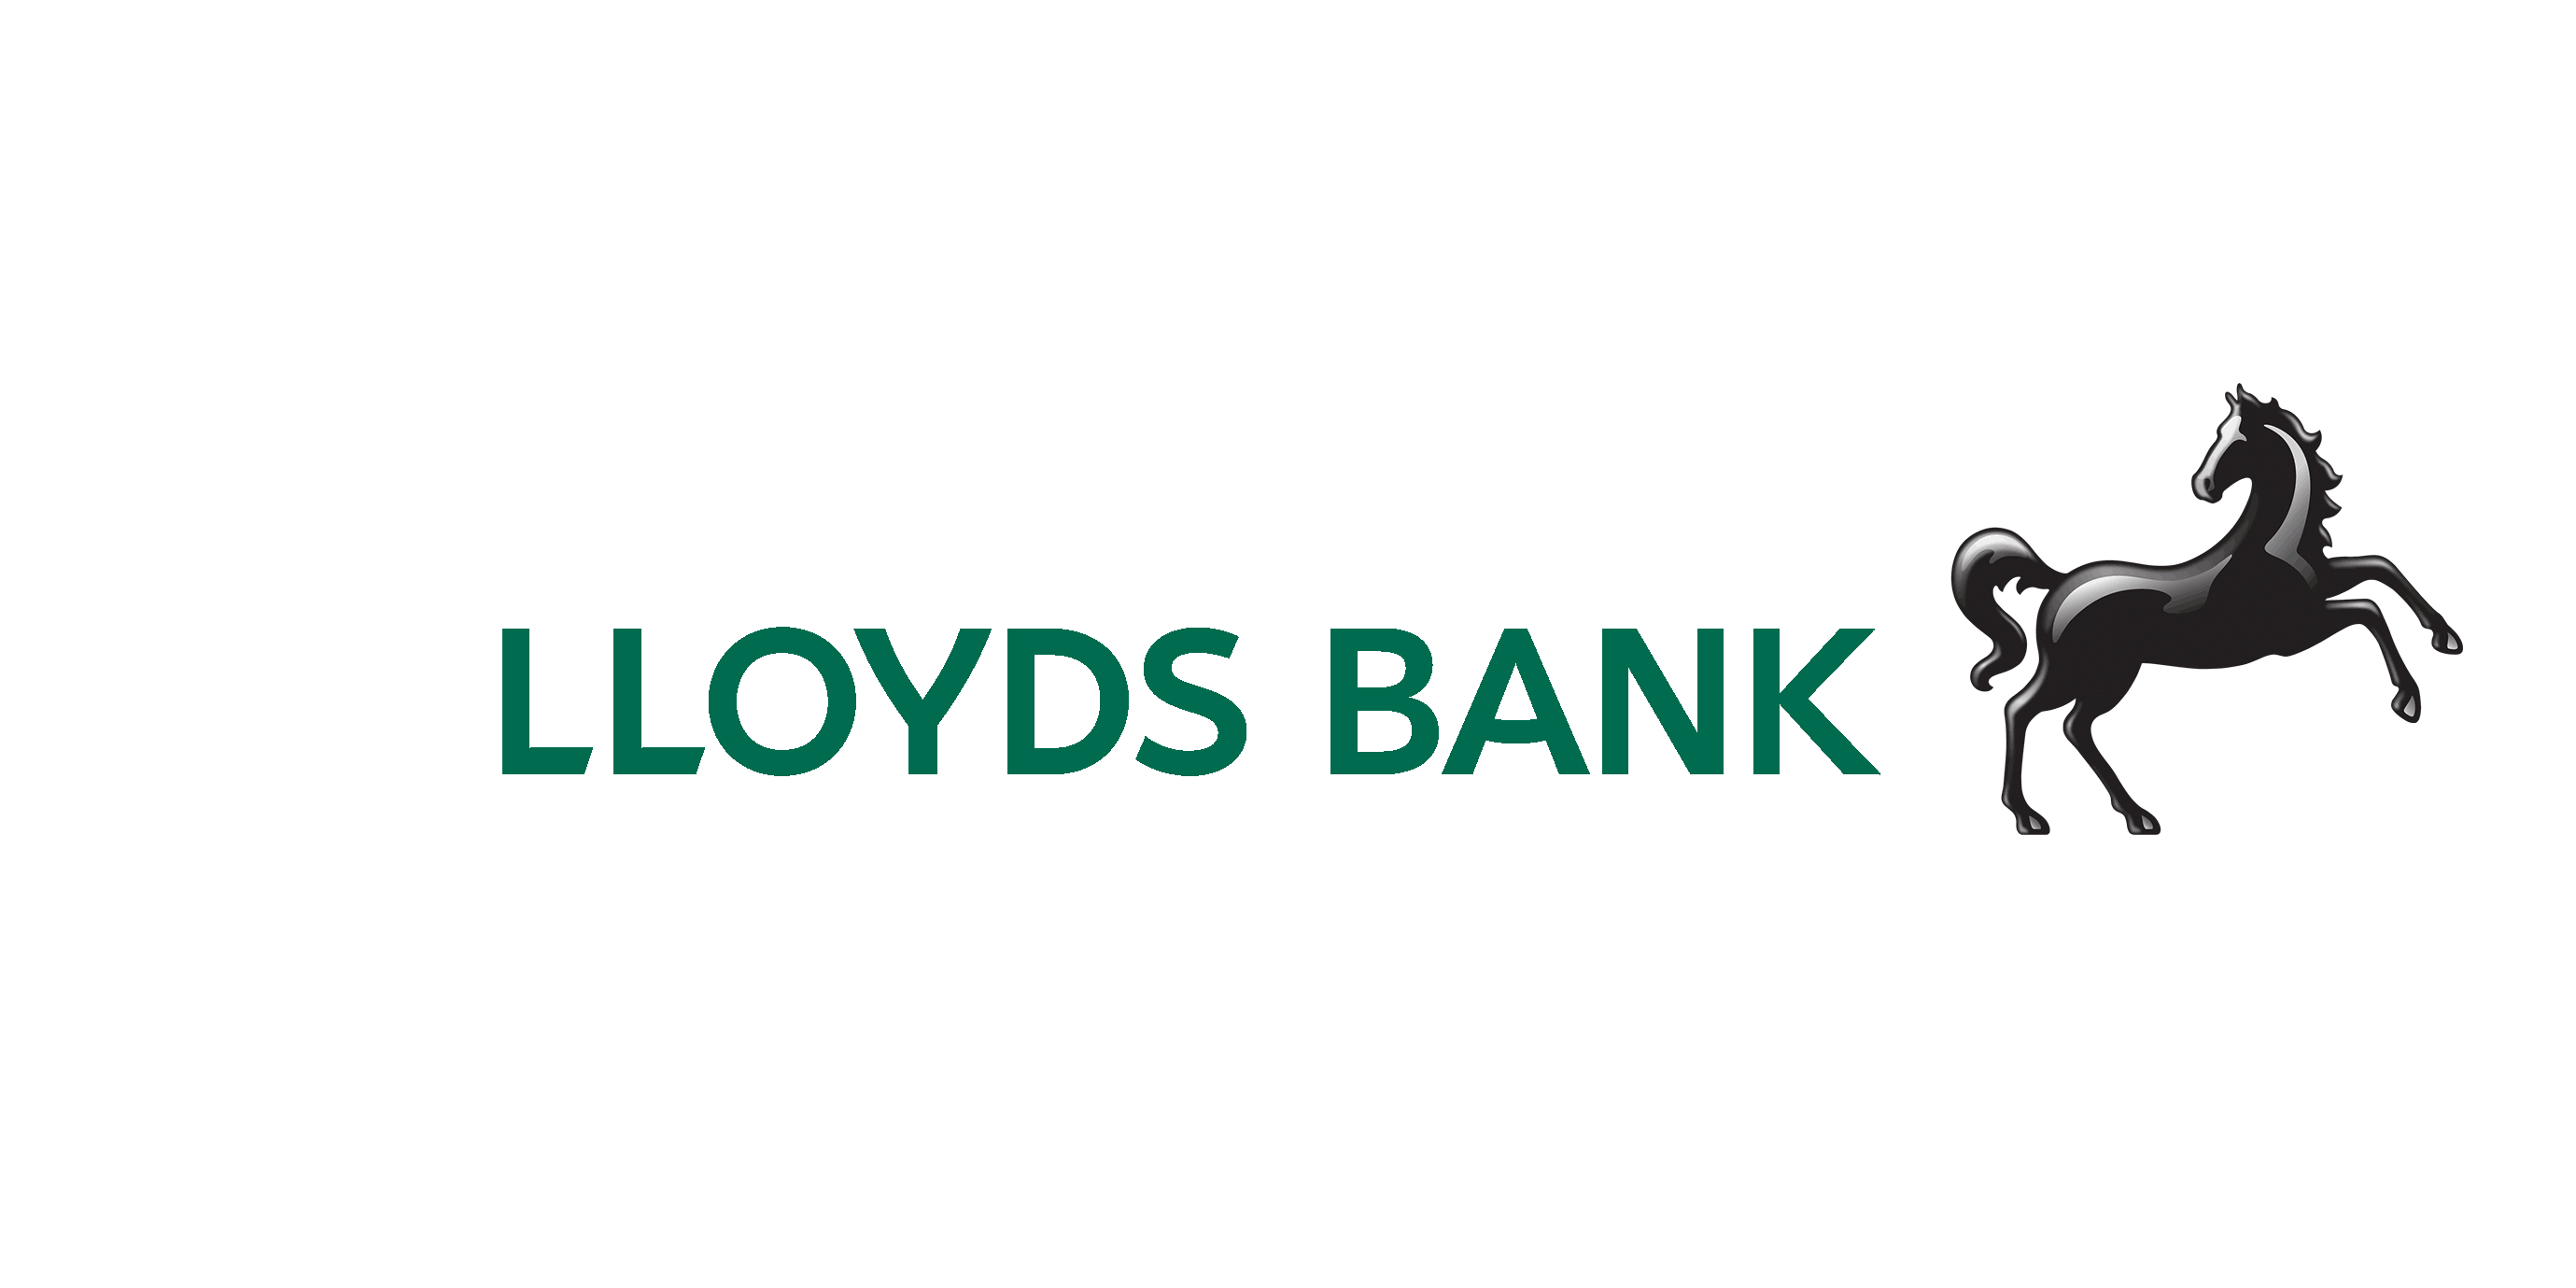 Lloyds Bank Strengthens Fintech Partnerships